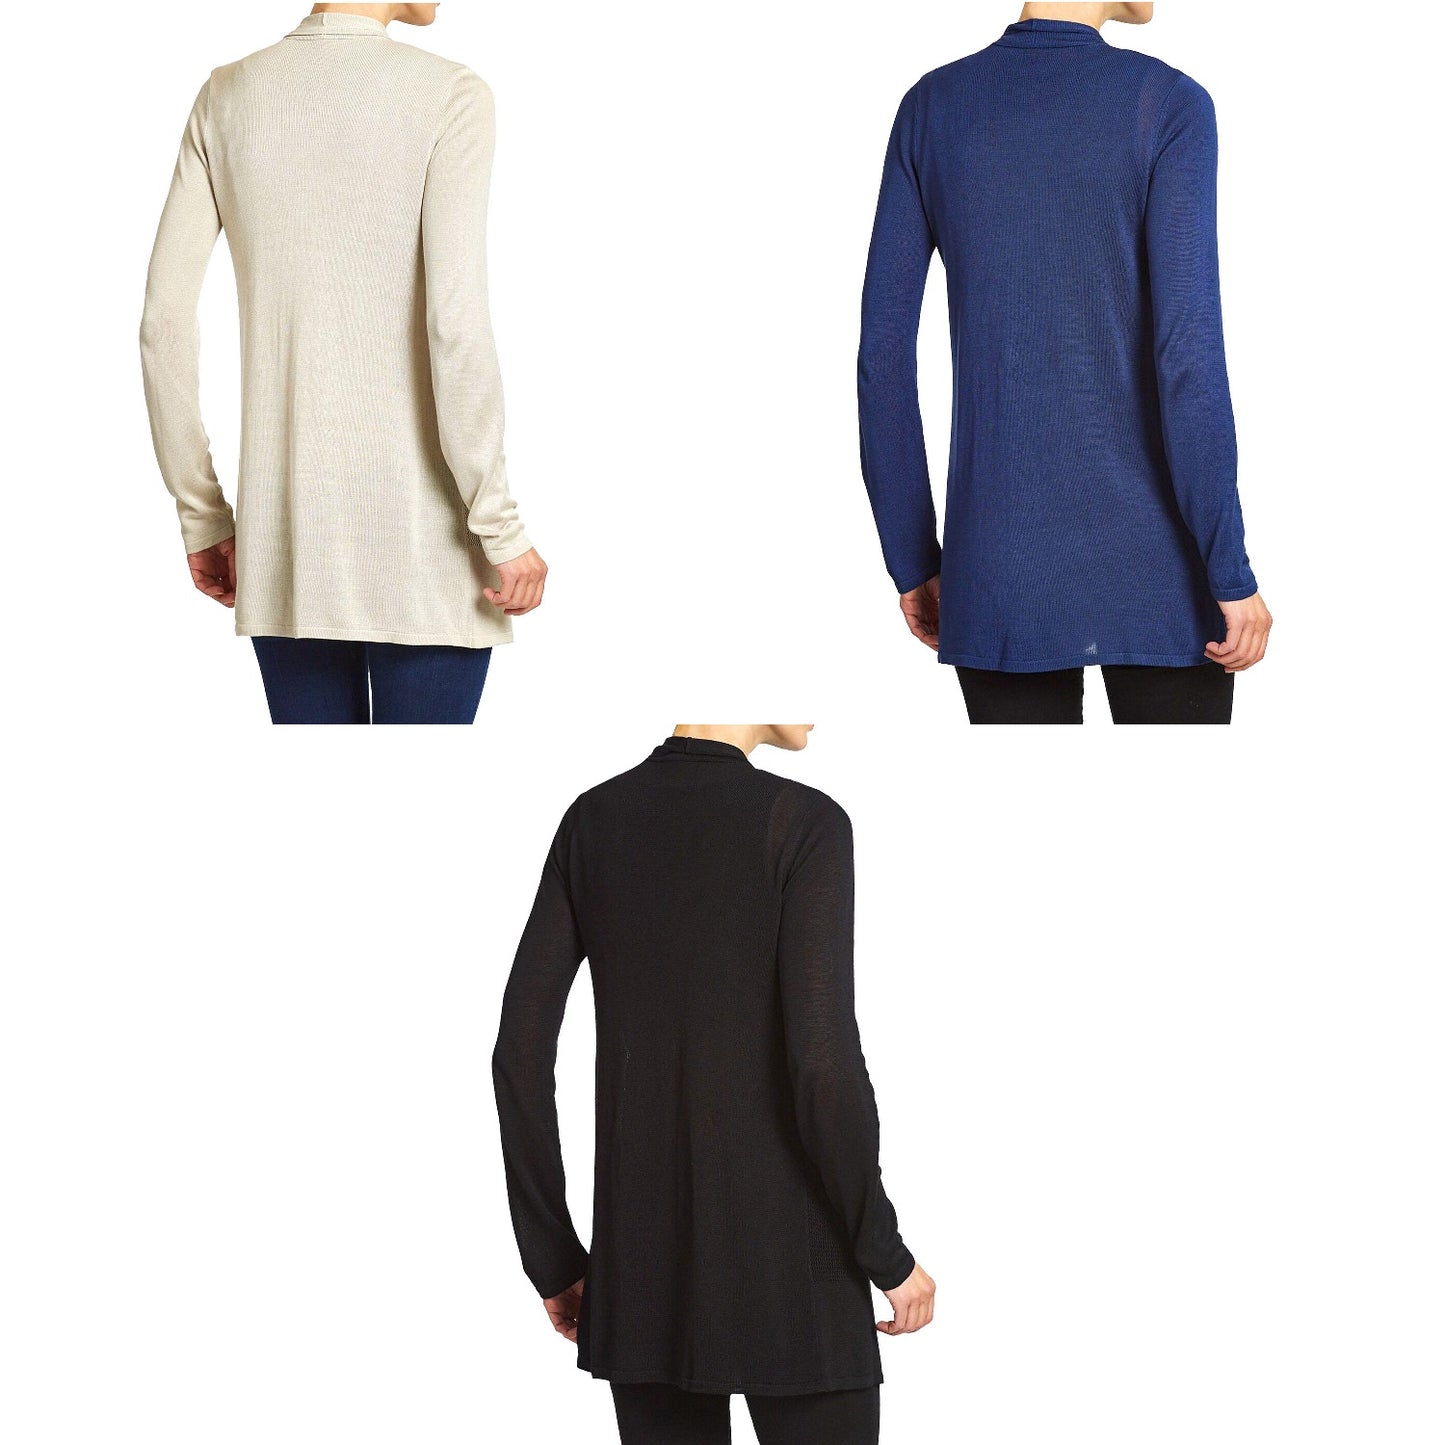 Premise Women's Long Sleeve Open Front Drape Knit Cardigan w/ Pointelle Details